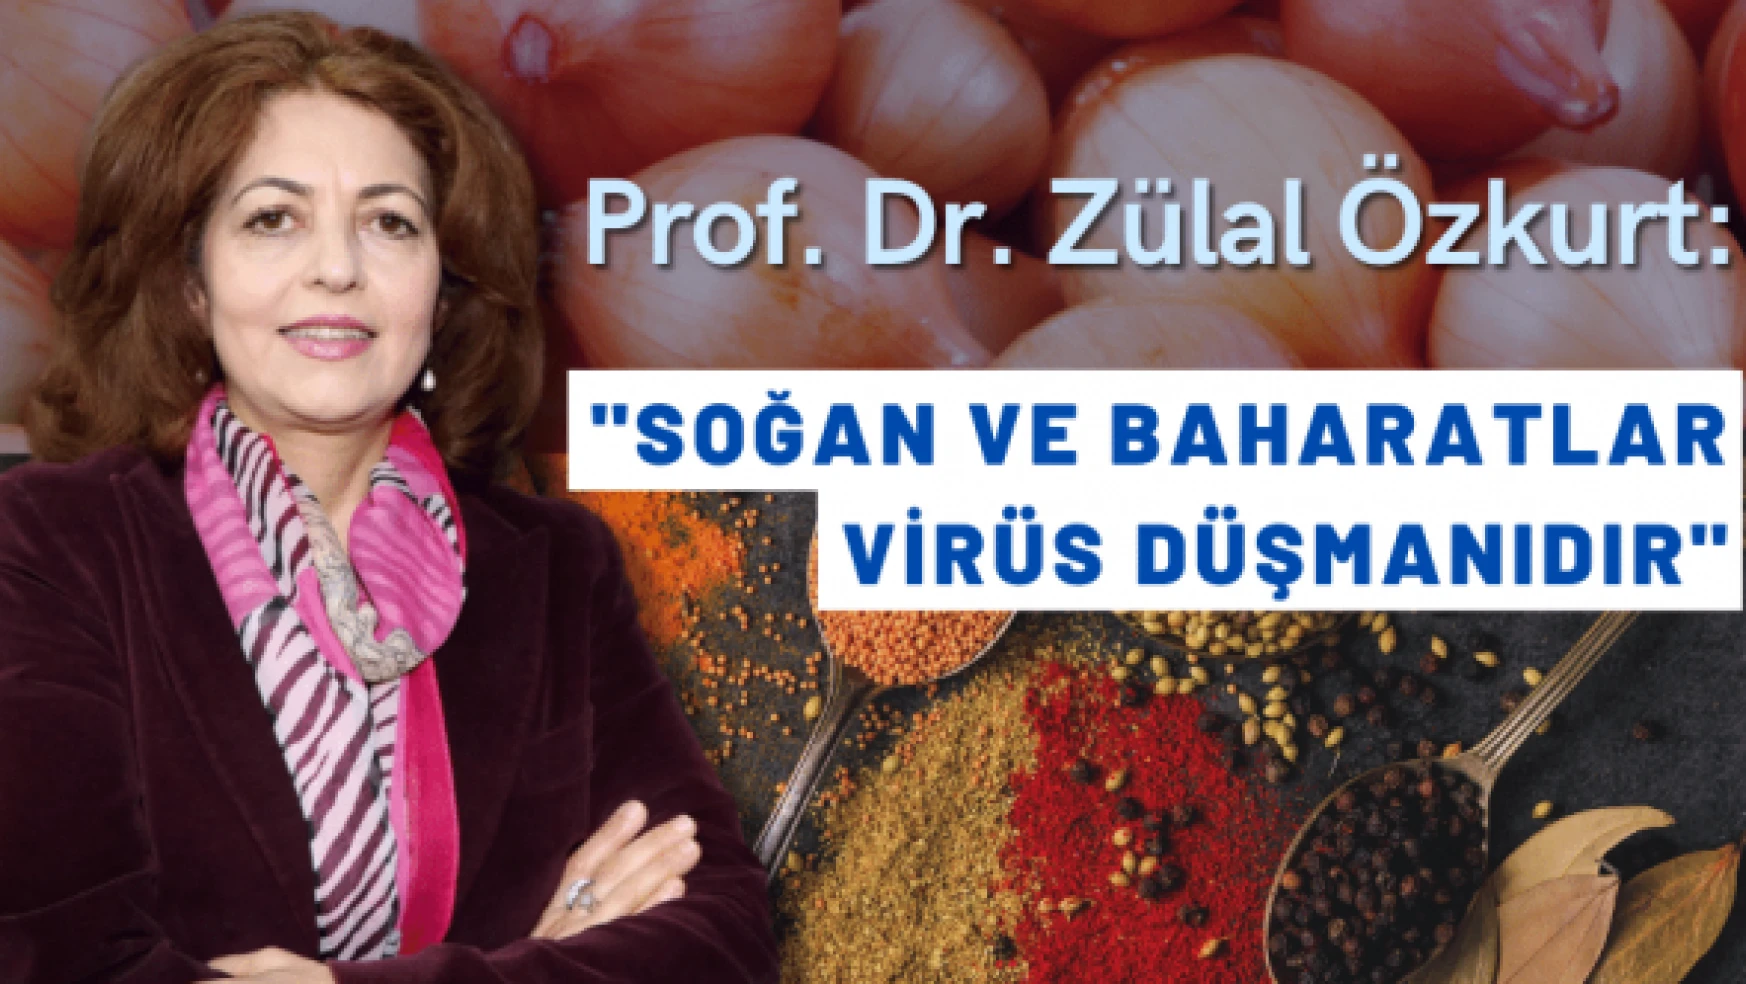 Virüs düşmanları: Soğan ve baharatlar